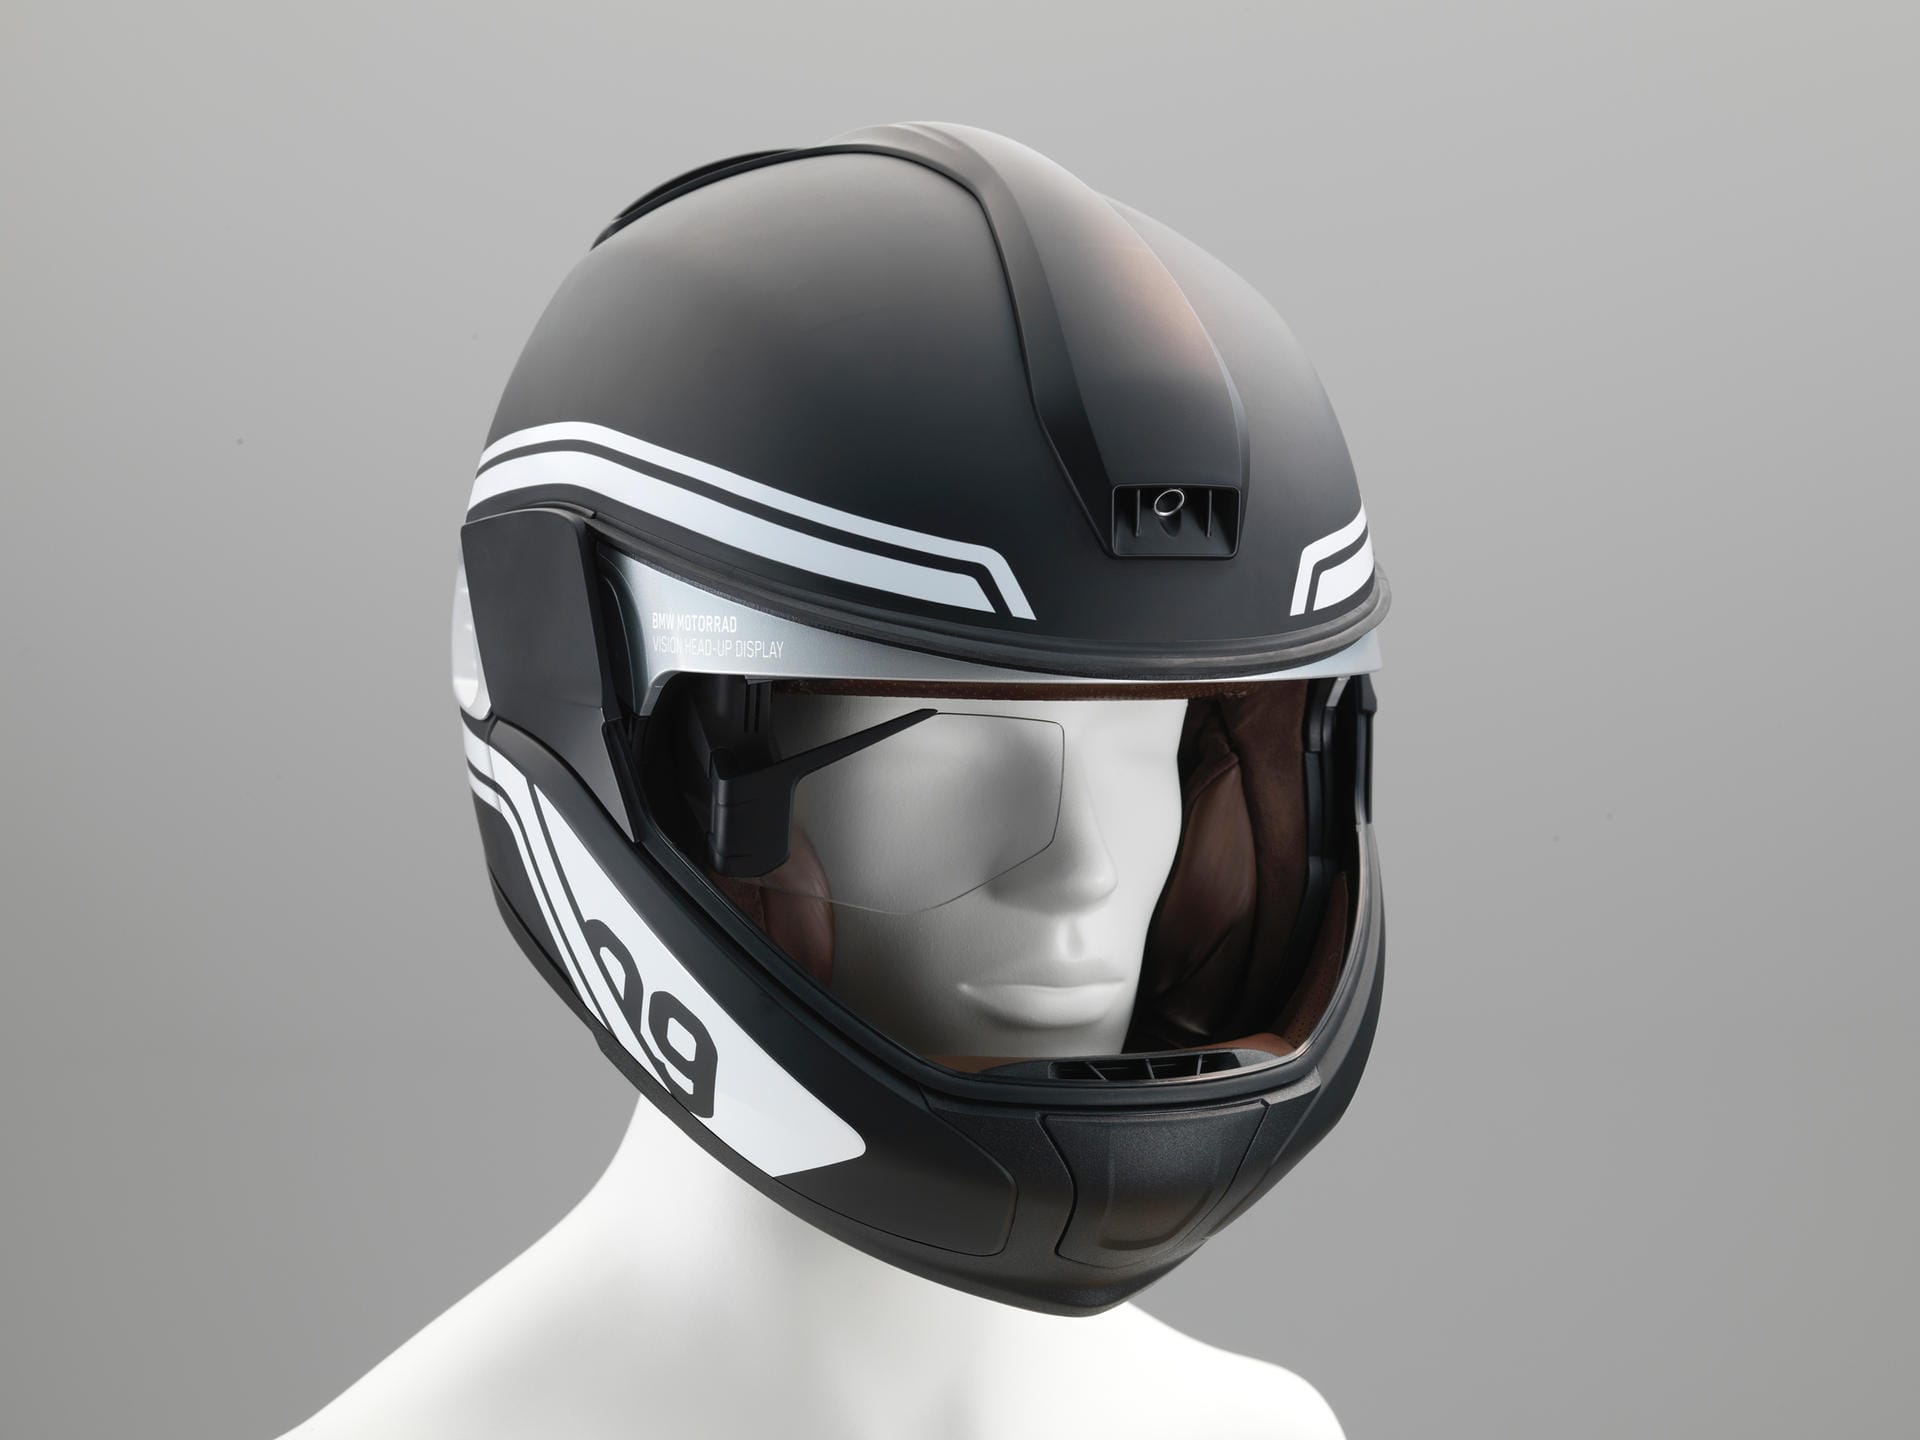 BMW zeigt Helm mit Head-Up Display